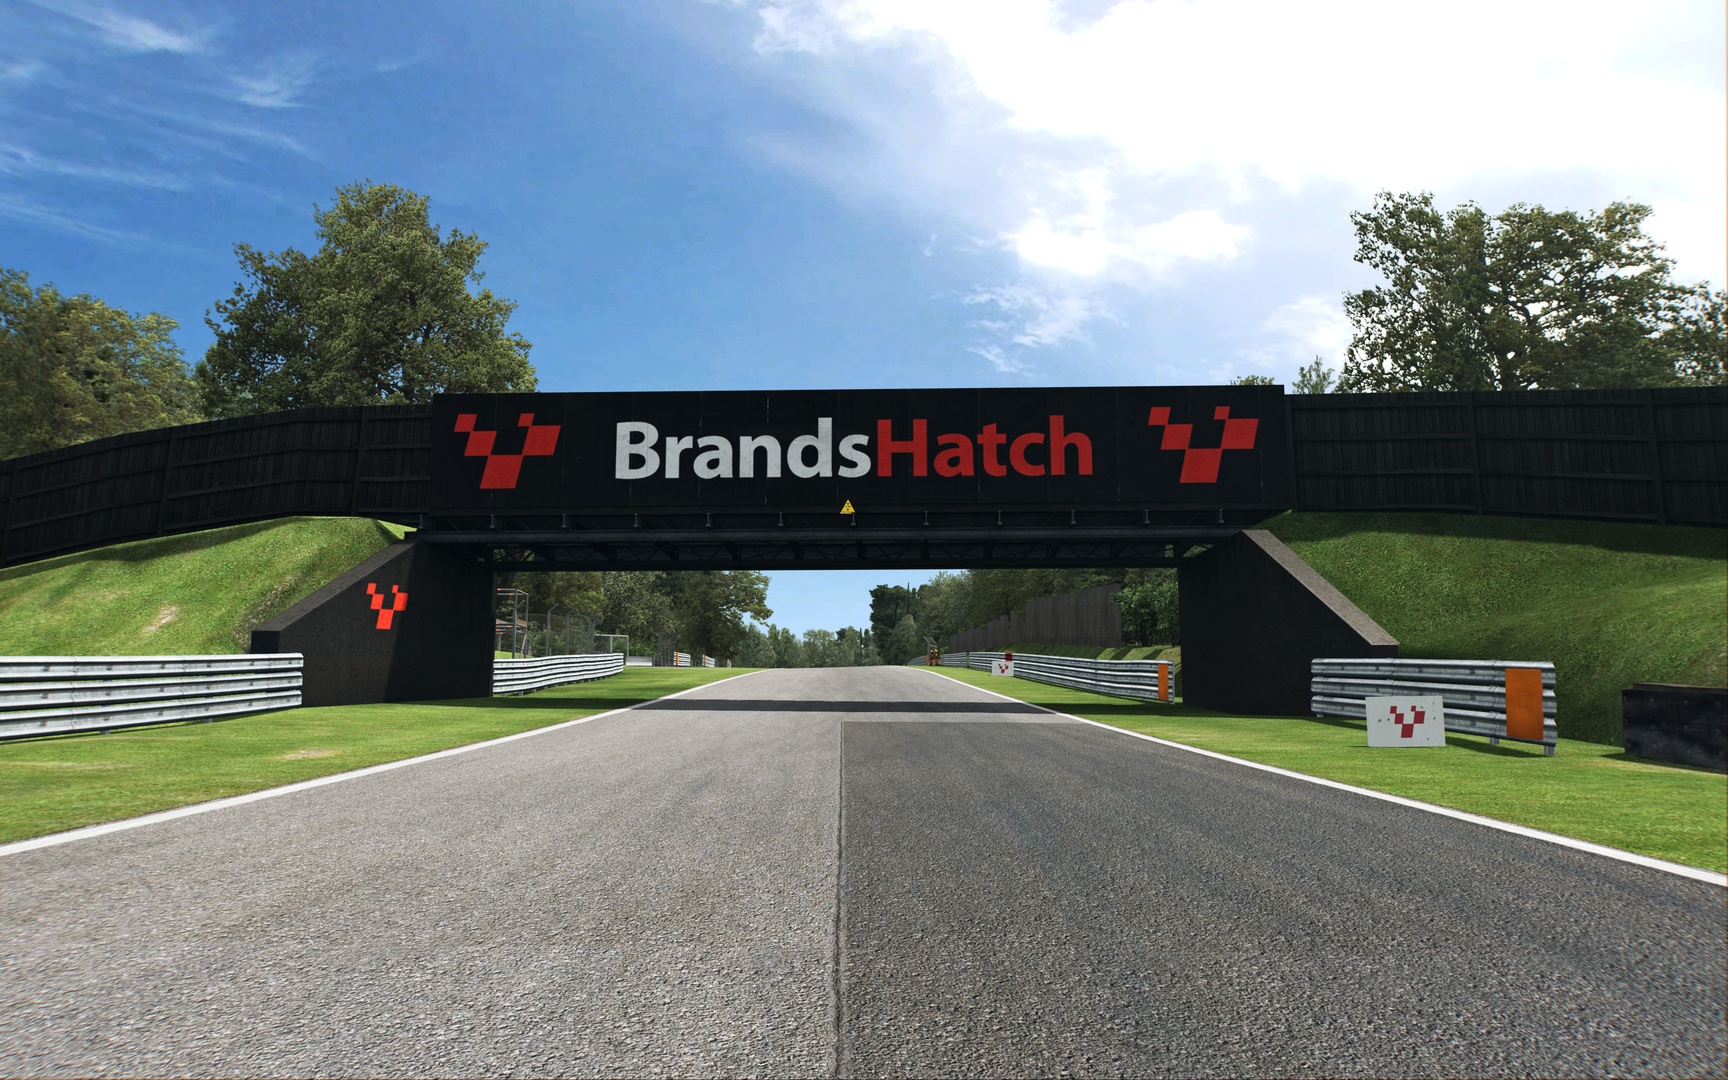 More information about "RaceRoom: disponibile il nuovo circuito di Brands Hatch"